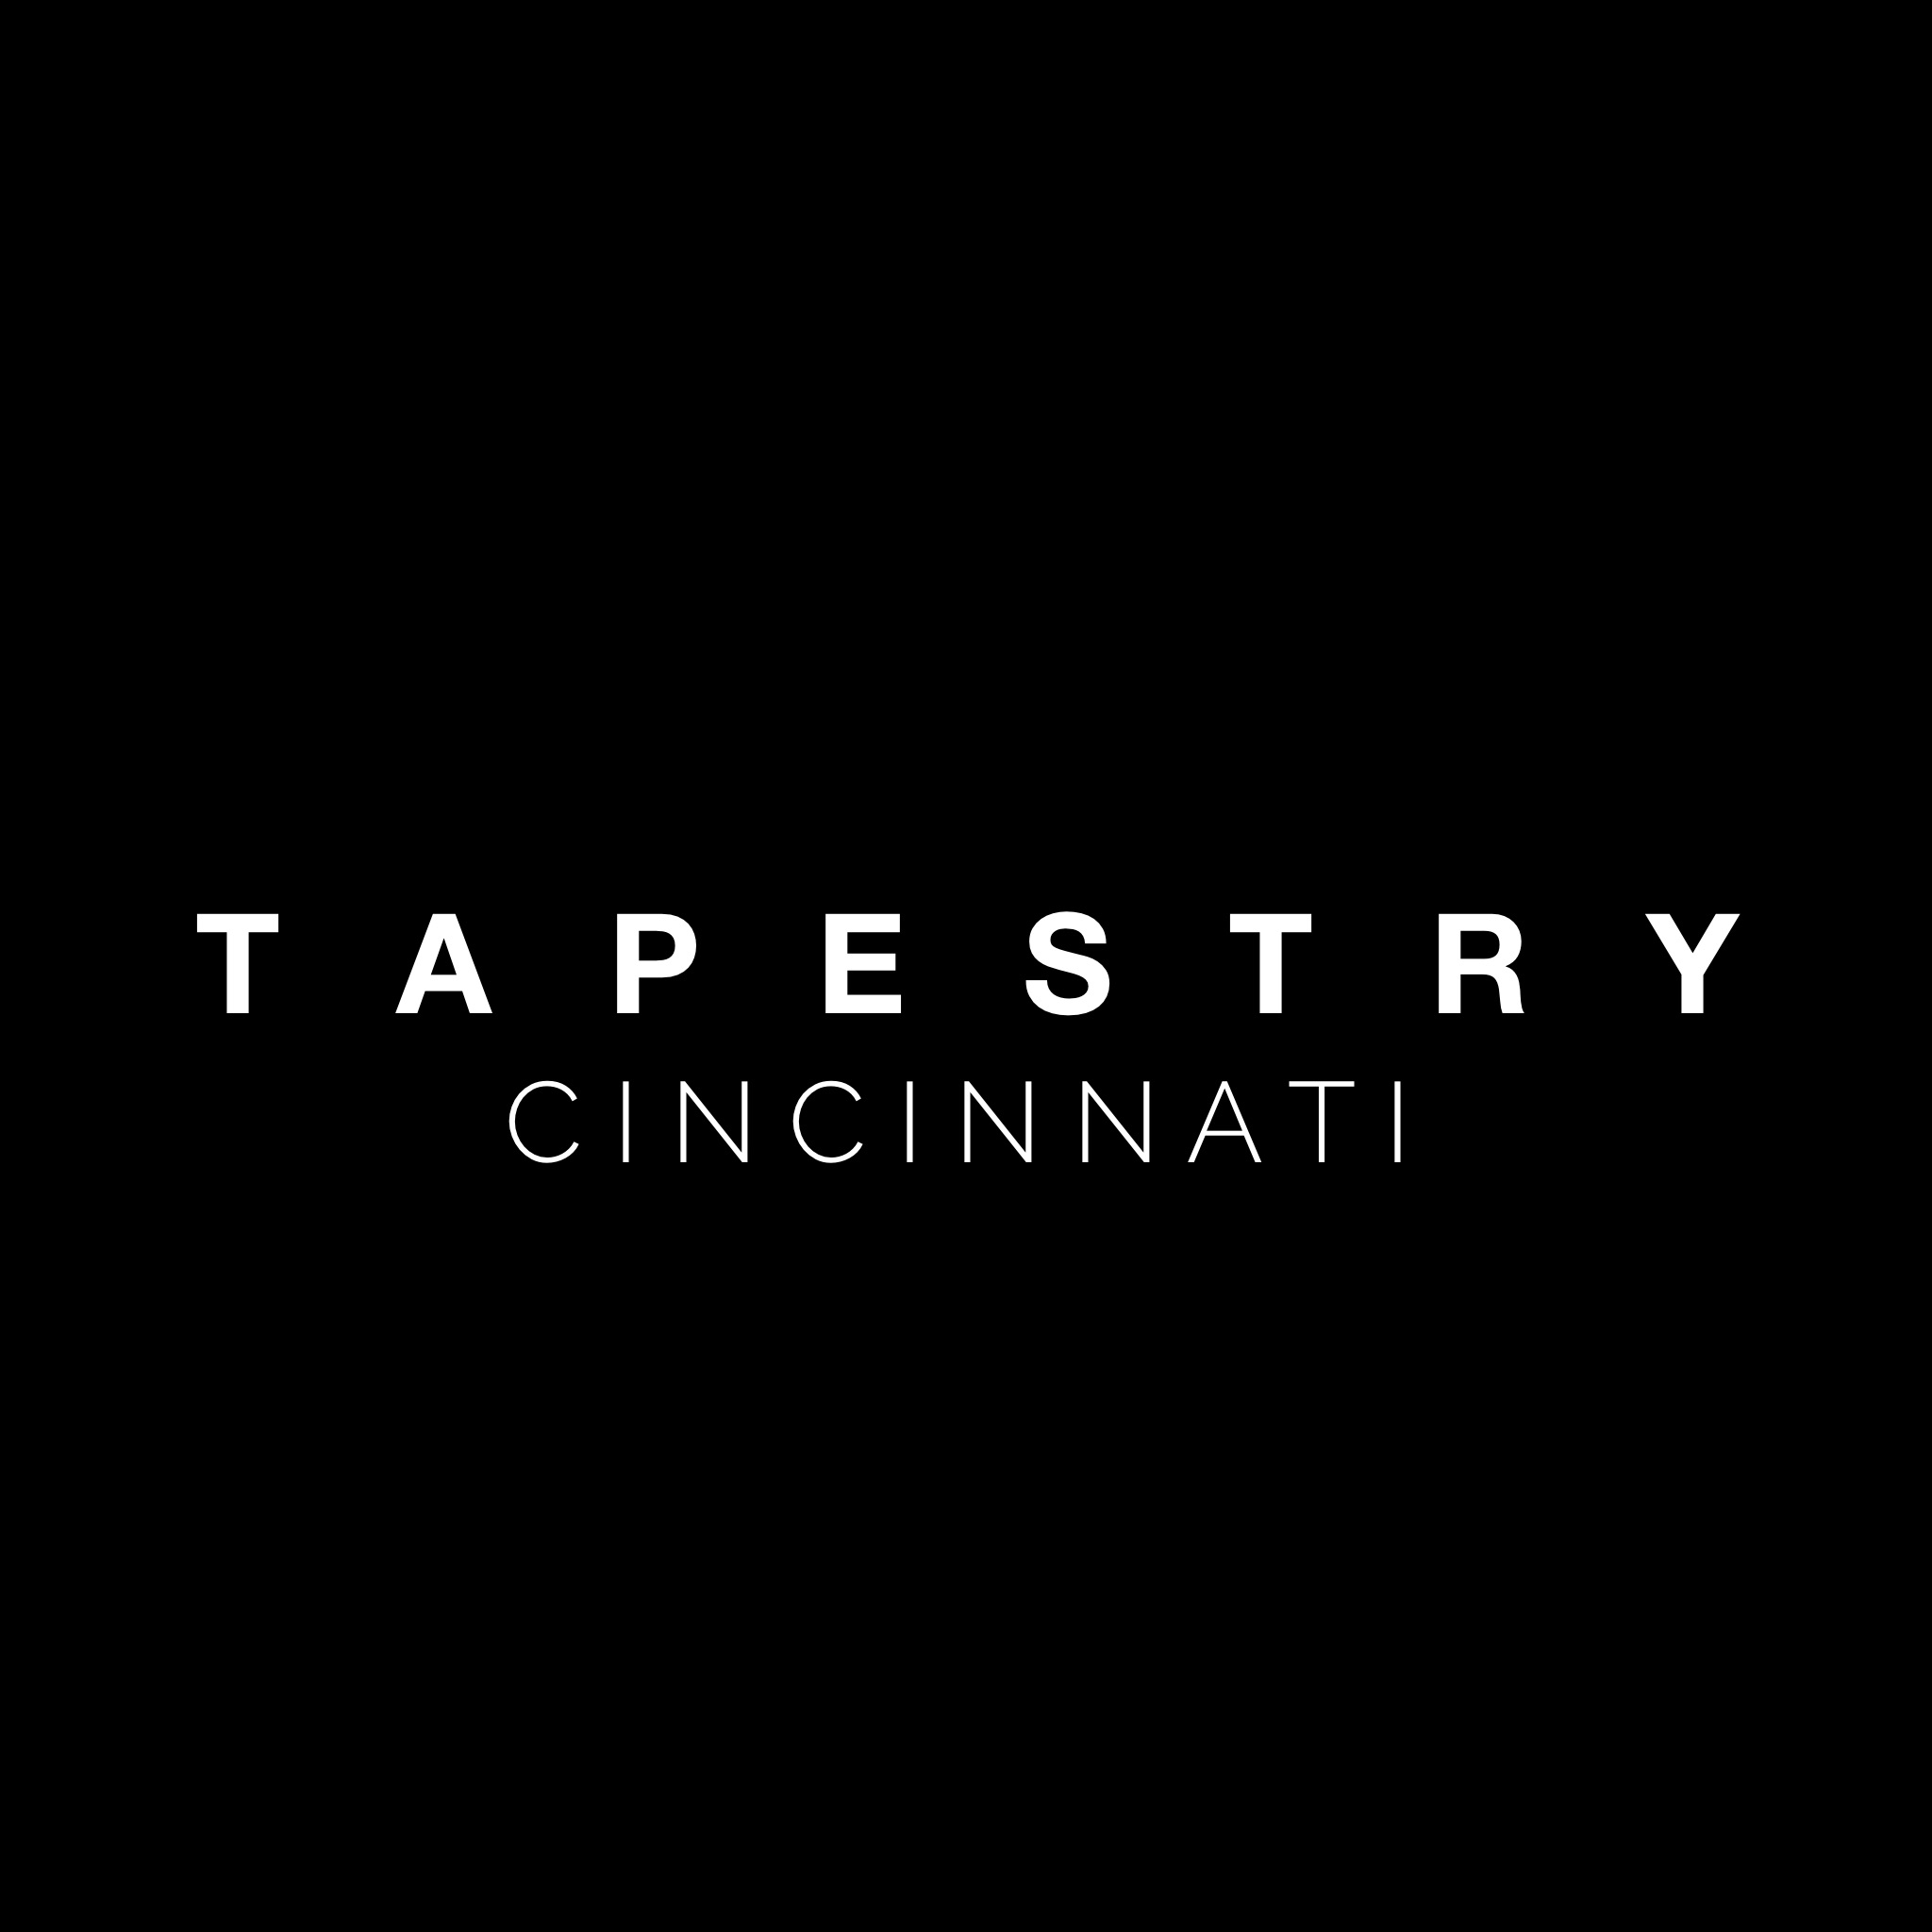 Tapestry Cincinnati